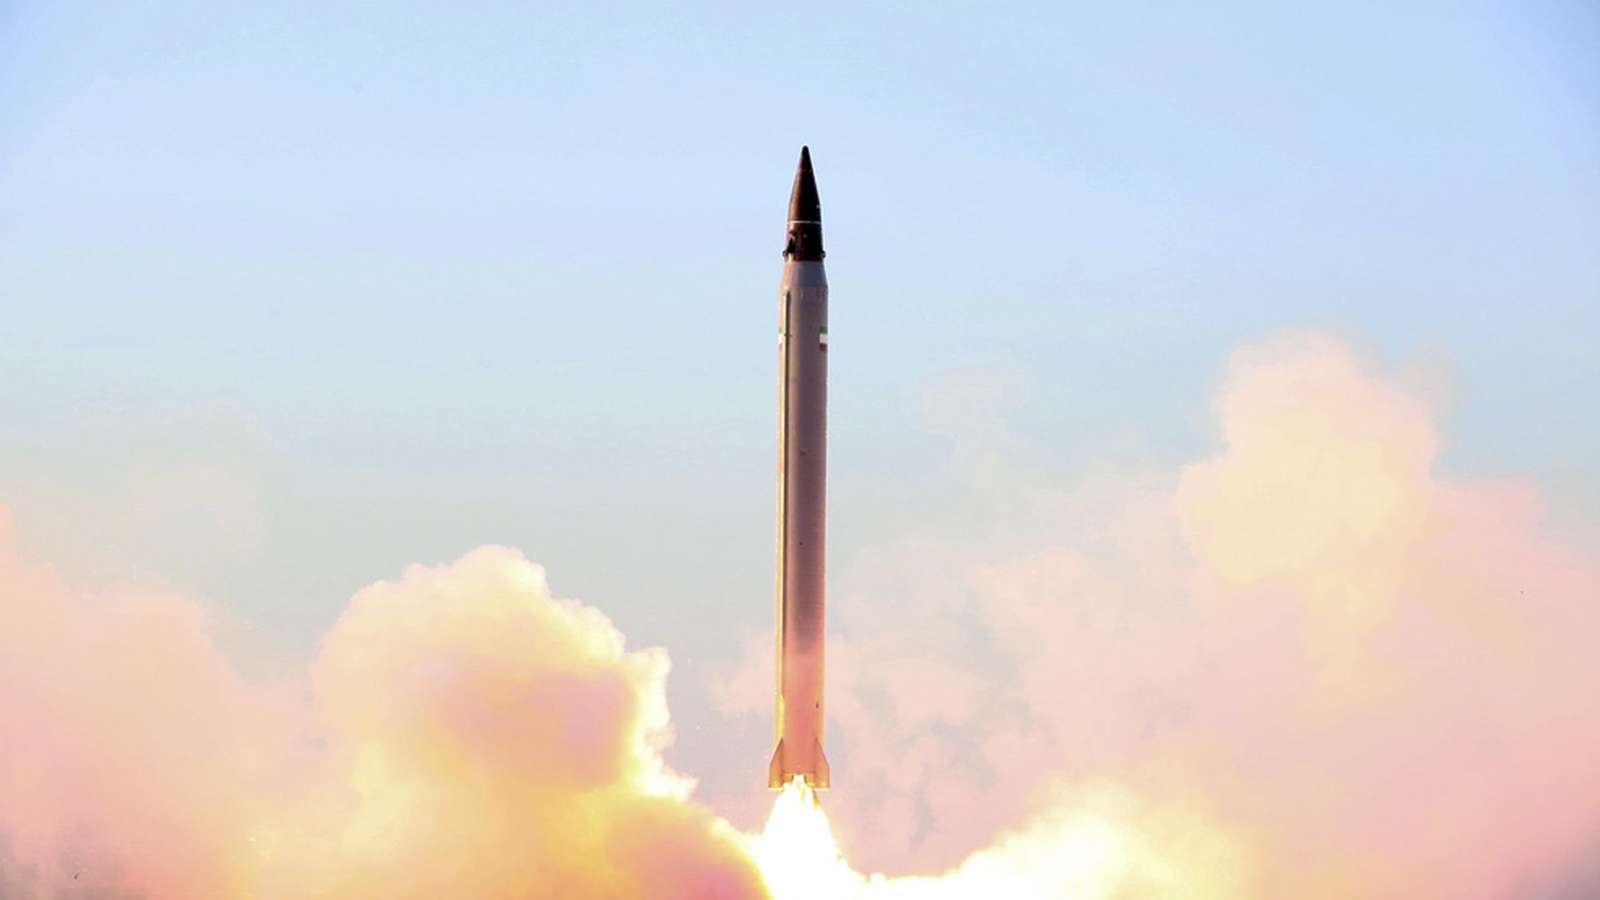 إيران أجرت تجارب على إطلاق صواريخ باليستية في أكثر من مناسبة (أسوشيتد برس)